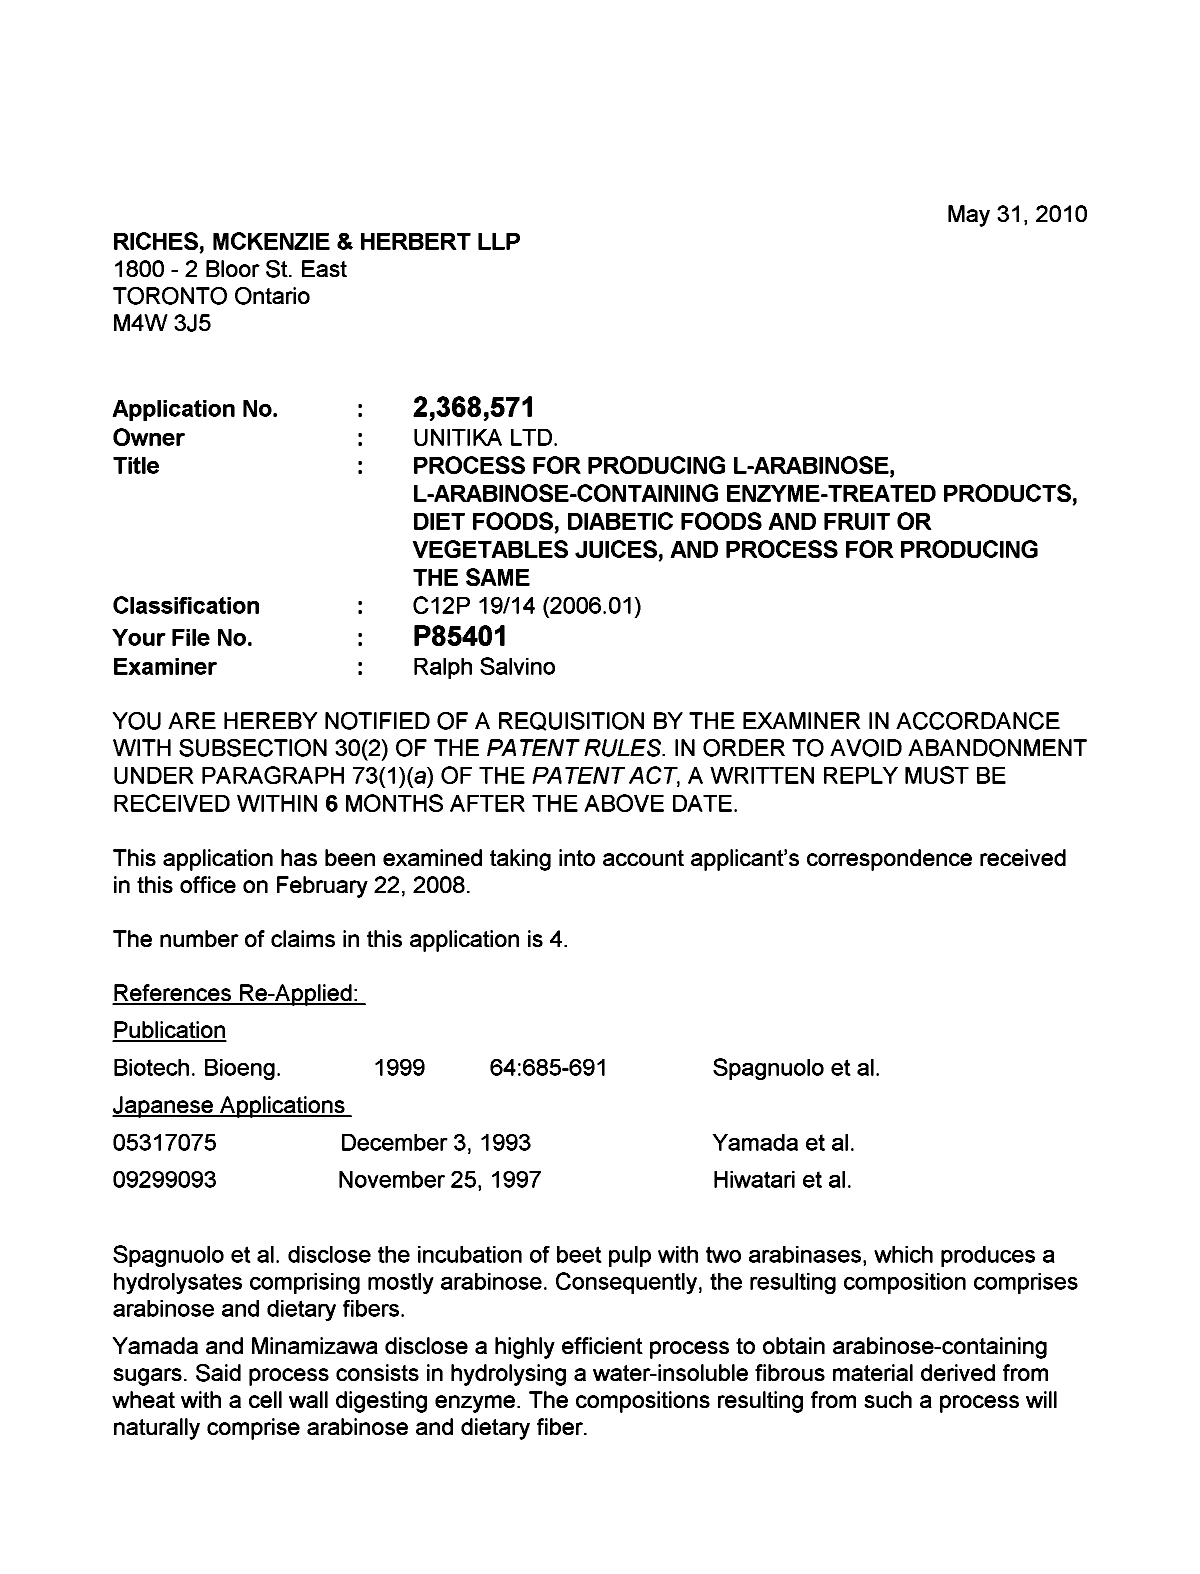 Document de brevet canadien 2368571. Poursuite-Amendment 20100531. Image 1 de 2